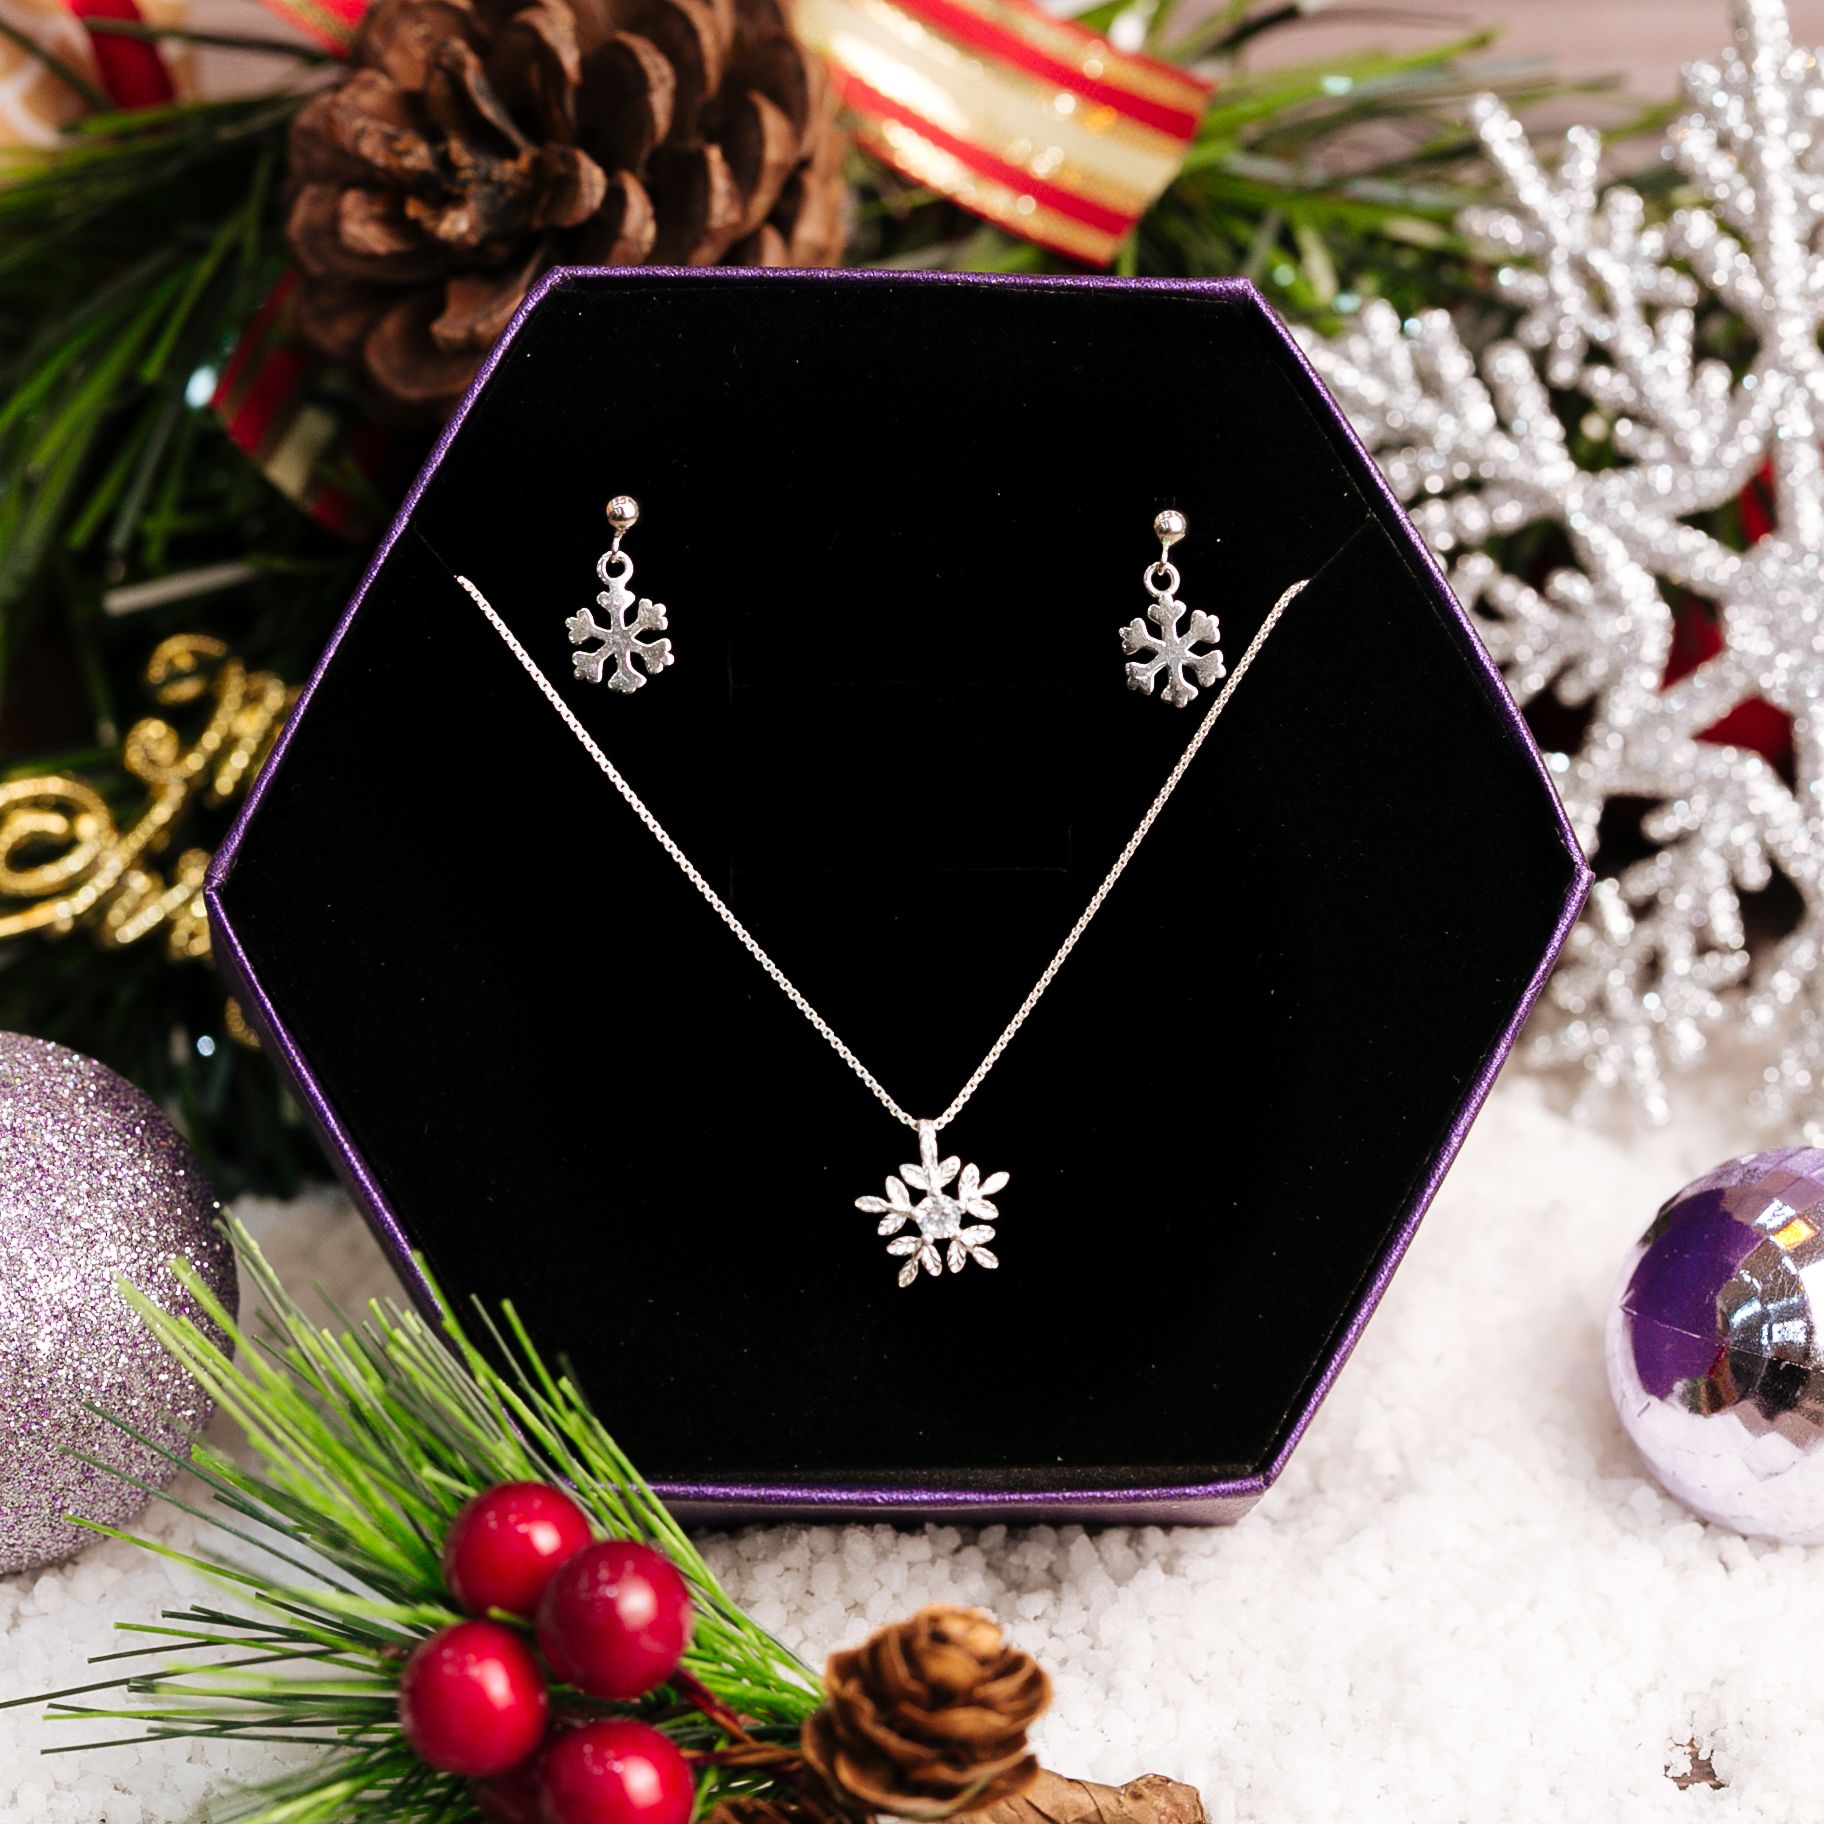  Snowflake Christmas Gift Jewelry Set - Bộ Trang Sức Hoa Tuyết Trơn Tòn Ten - Quà Tặng Giáng Sinh 